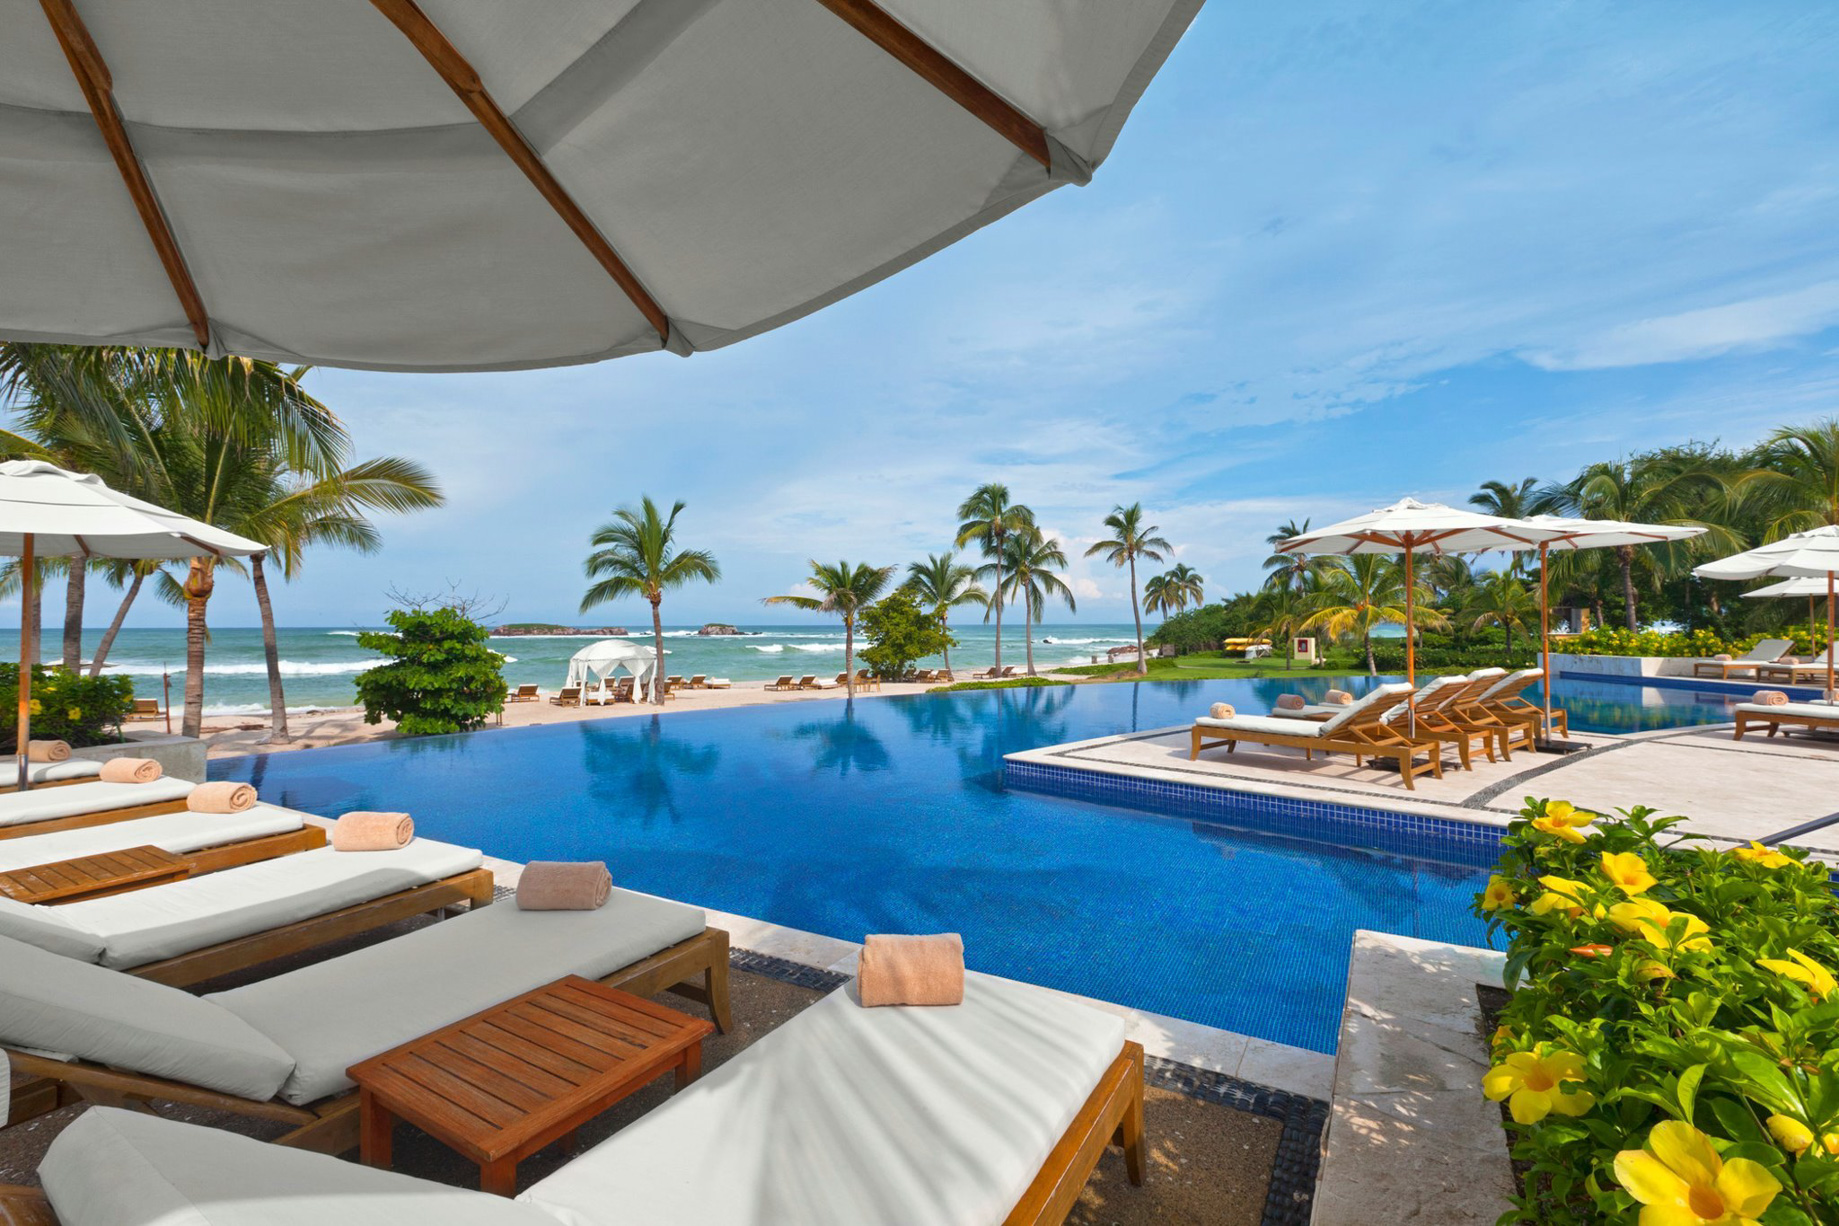 The St. Regis Punta Mita Resort - Nayarit, Mexico - Pool Ocean View